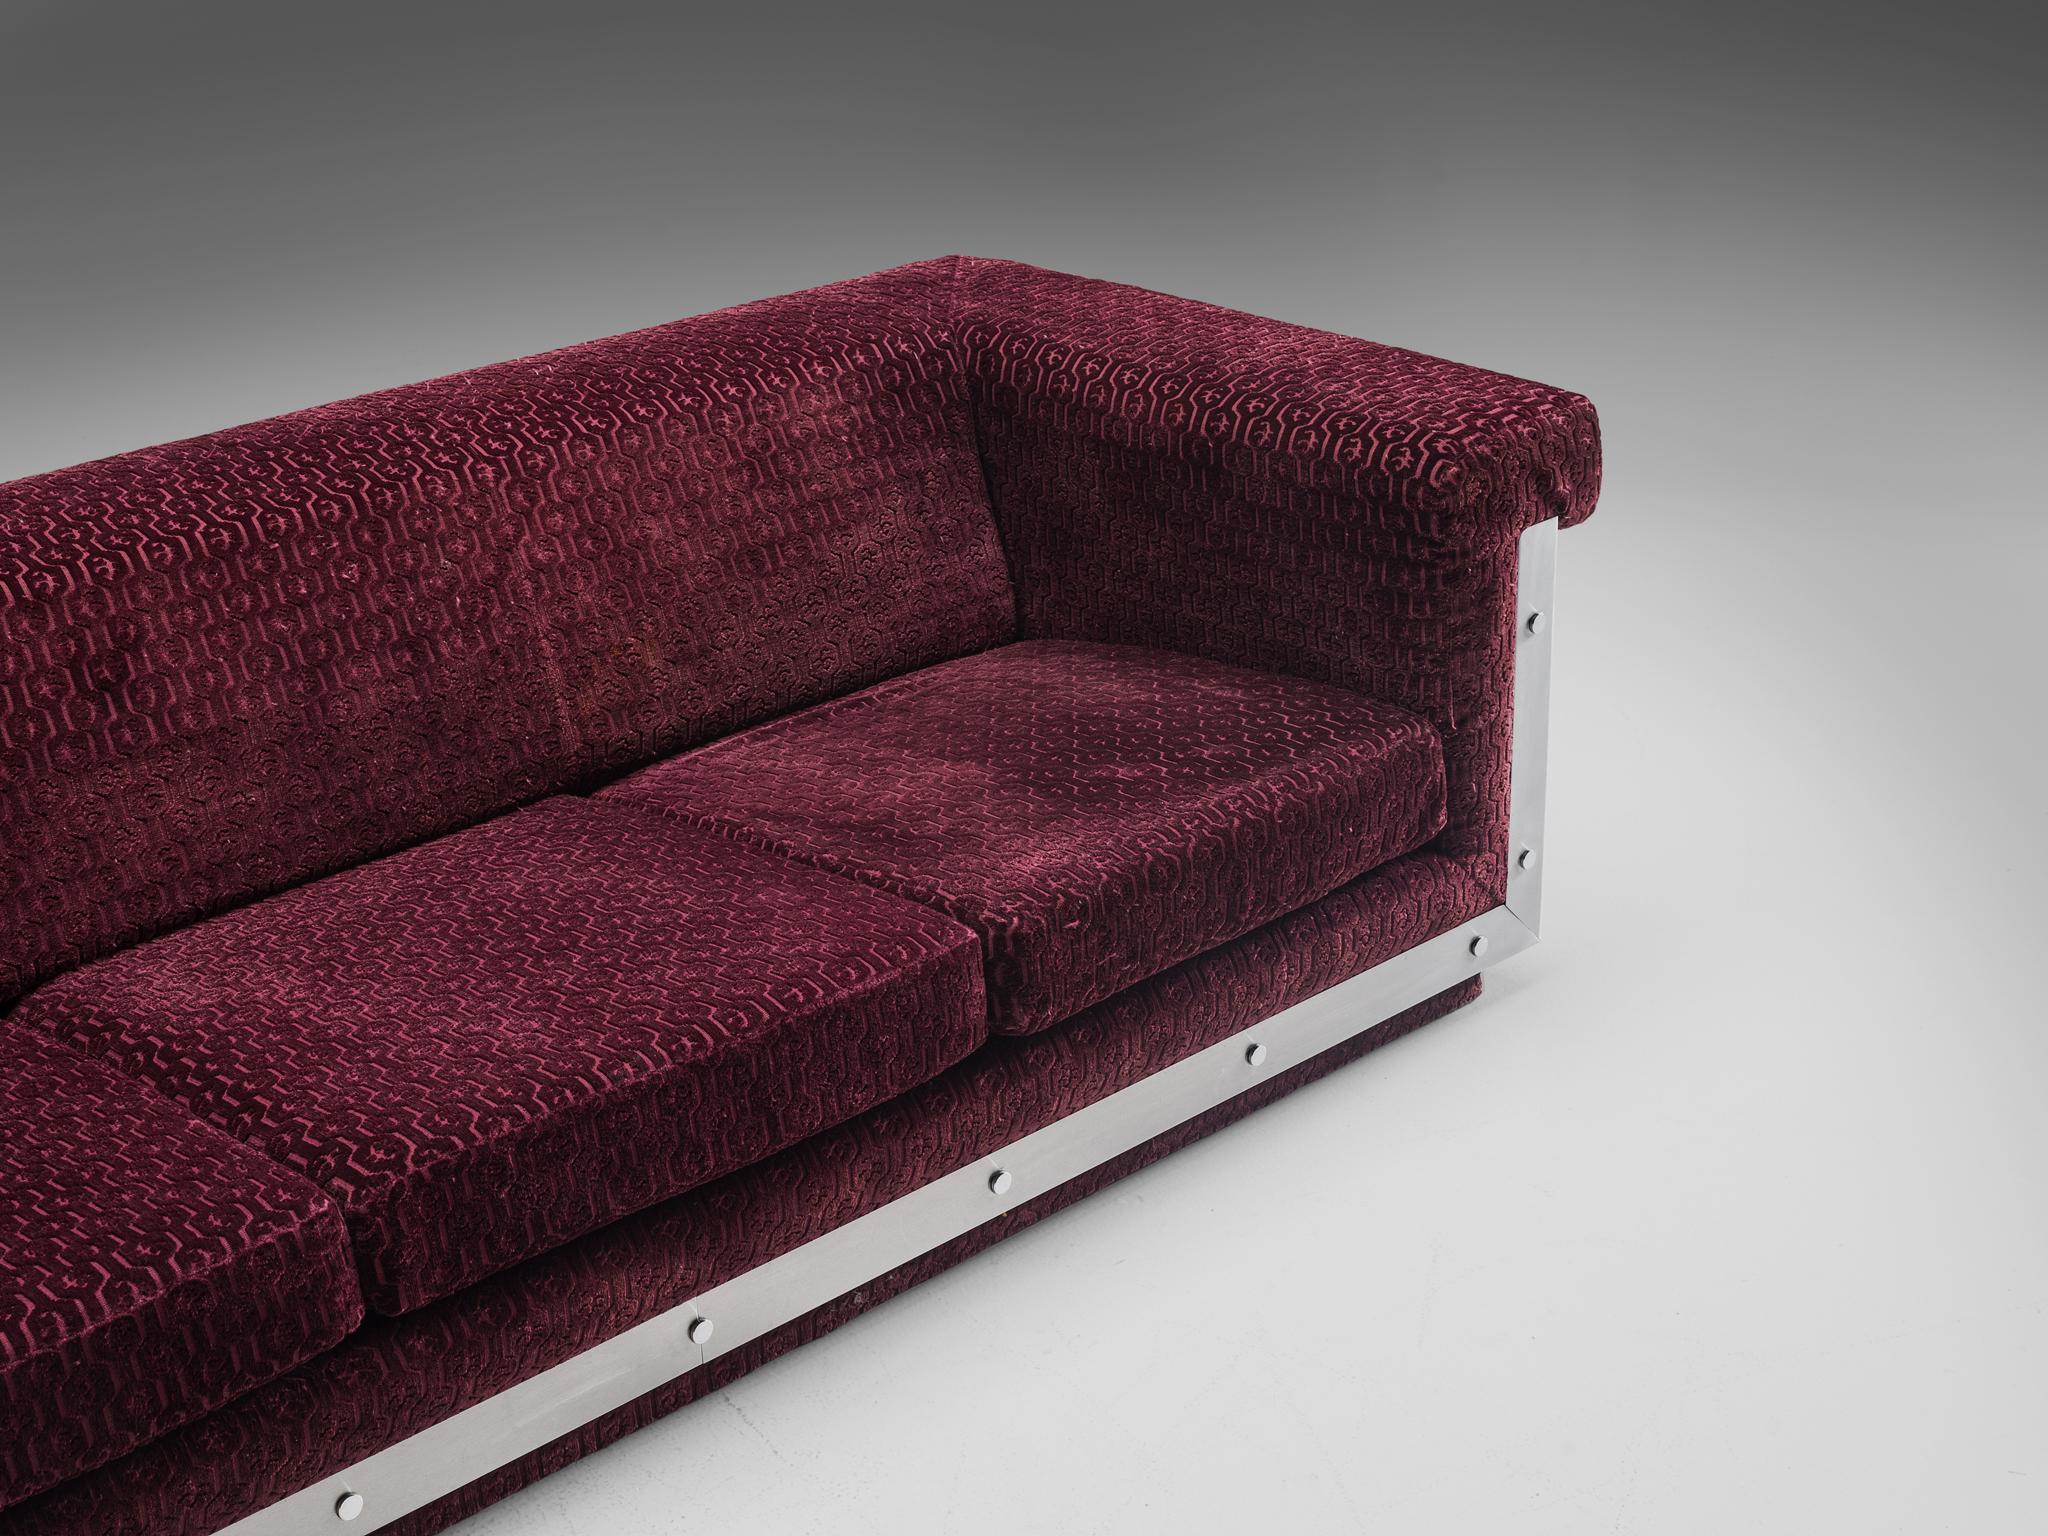 Postmodern French Sofa in Stainless Steel and Burgundy Velvet Upholstery 3